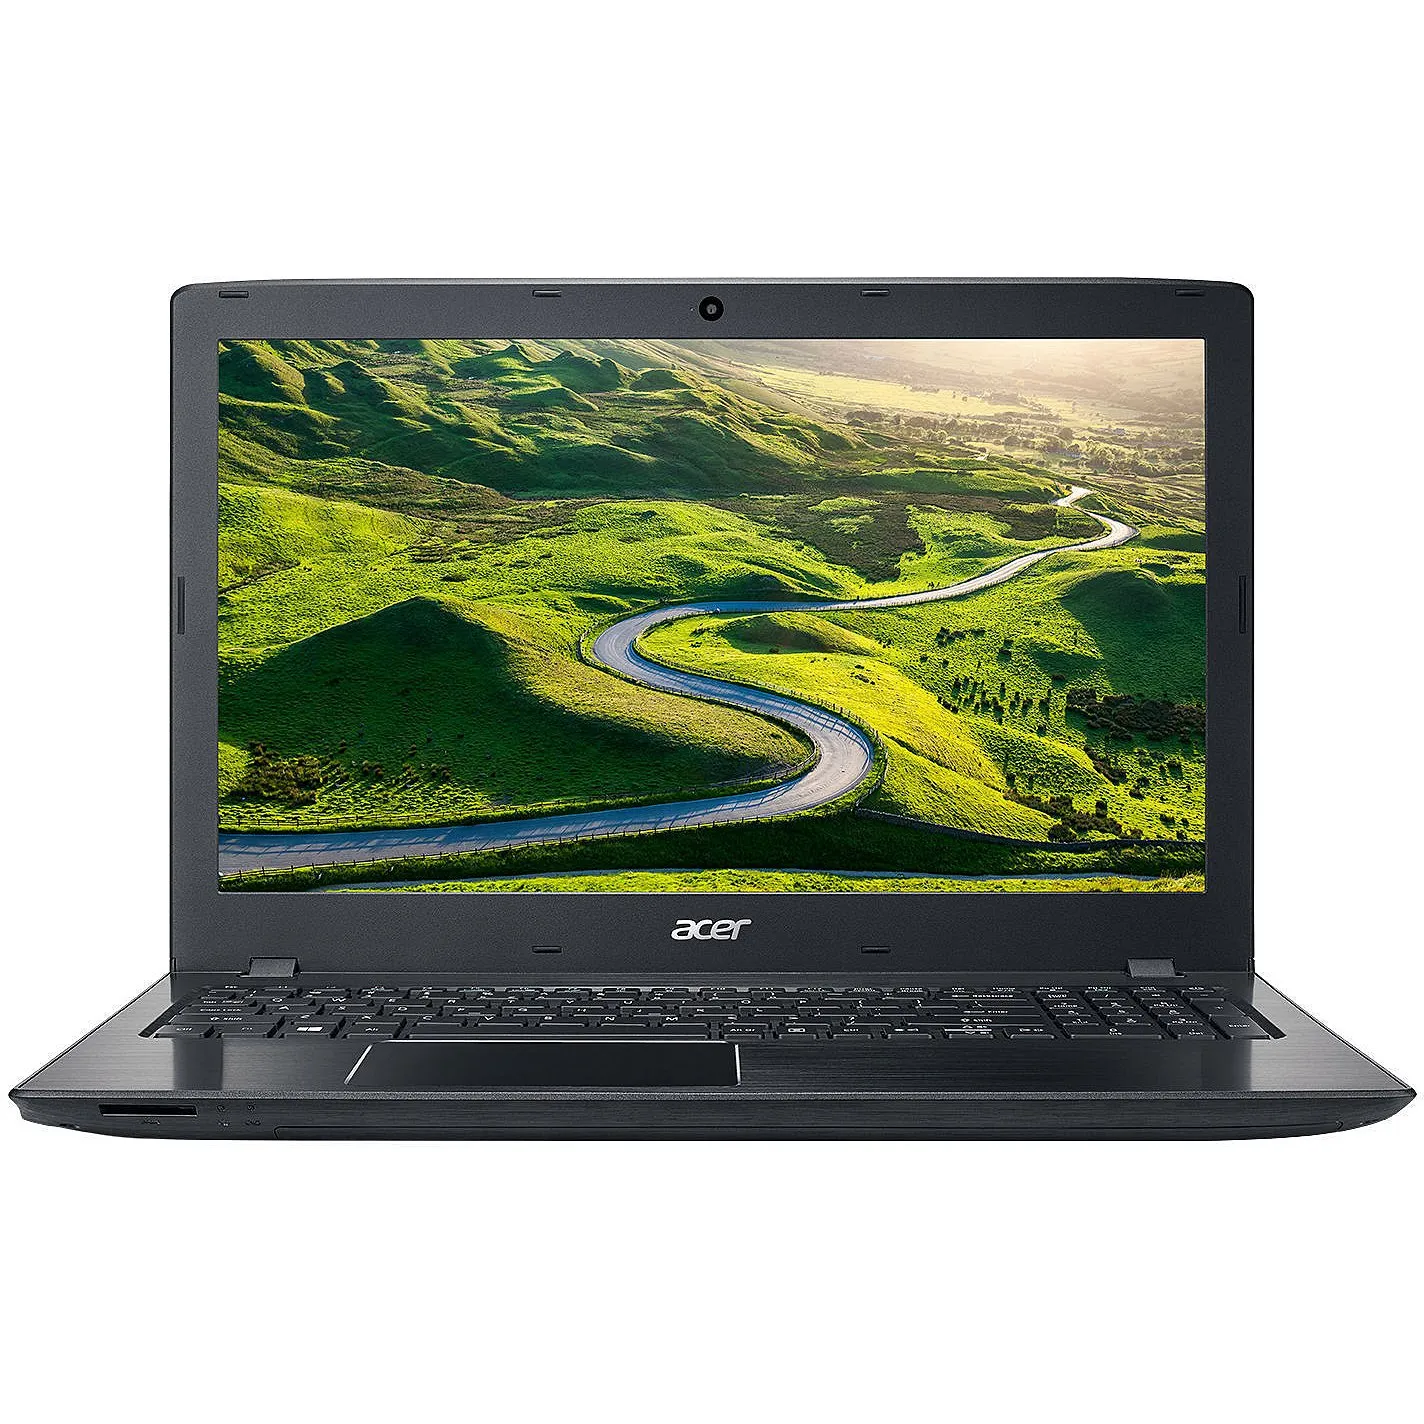 Noutbuk Acer E15/ Intel i5-7200U/ DDR4 4GB/ HDD 500GB/ 15,6" HD LED/ 2GB GeForce GT940MX/ DVD / RUS/ Black#5